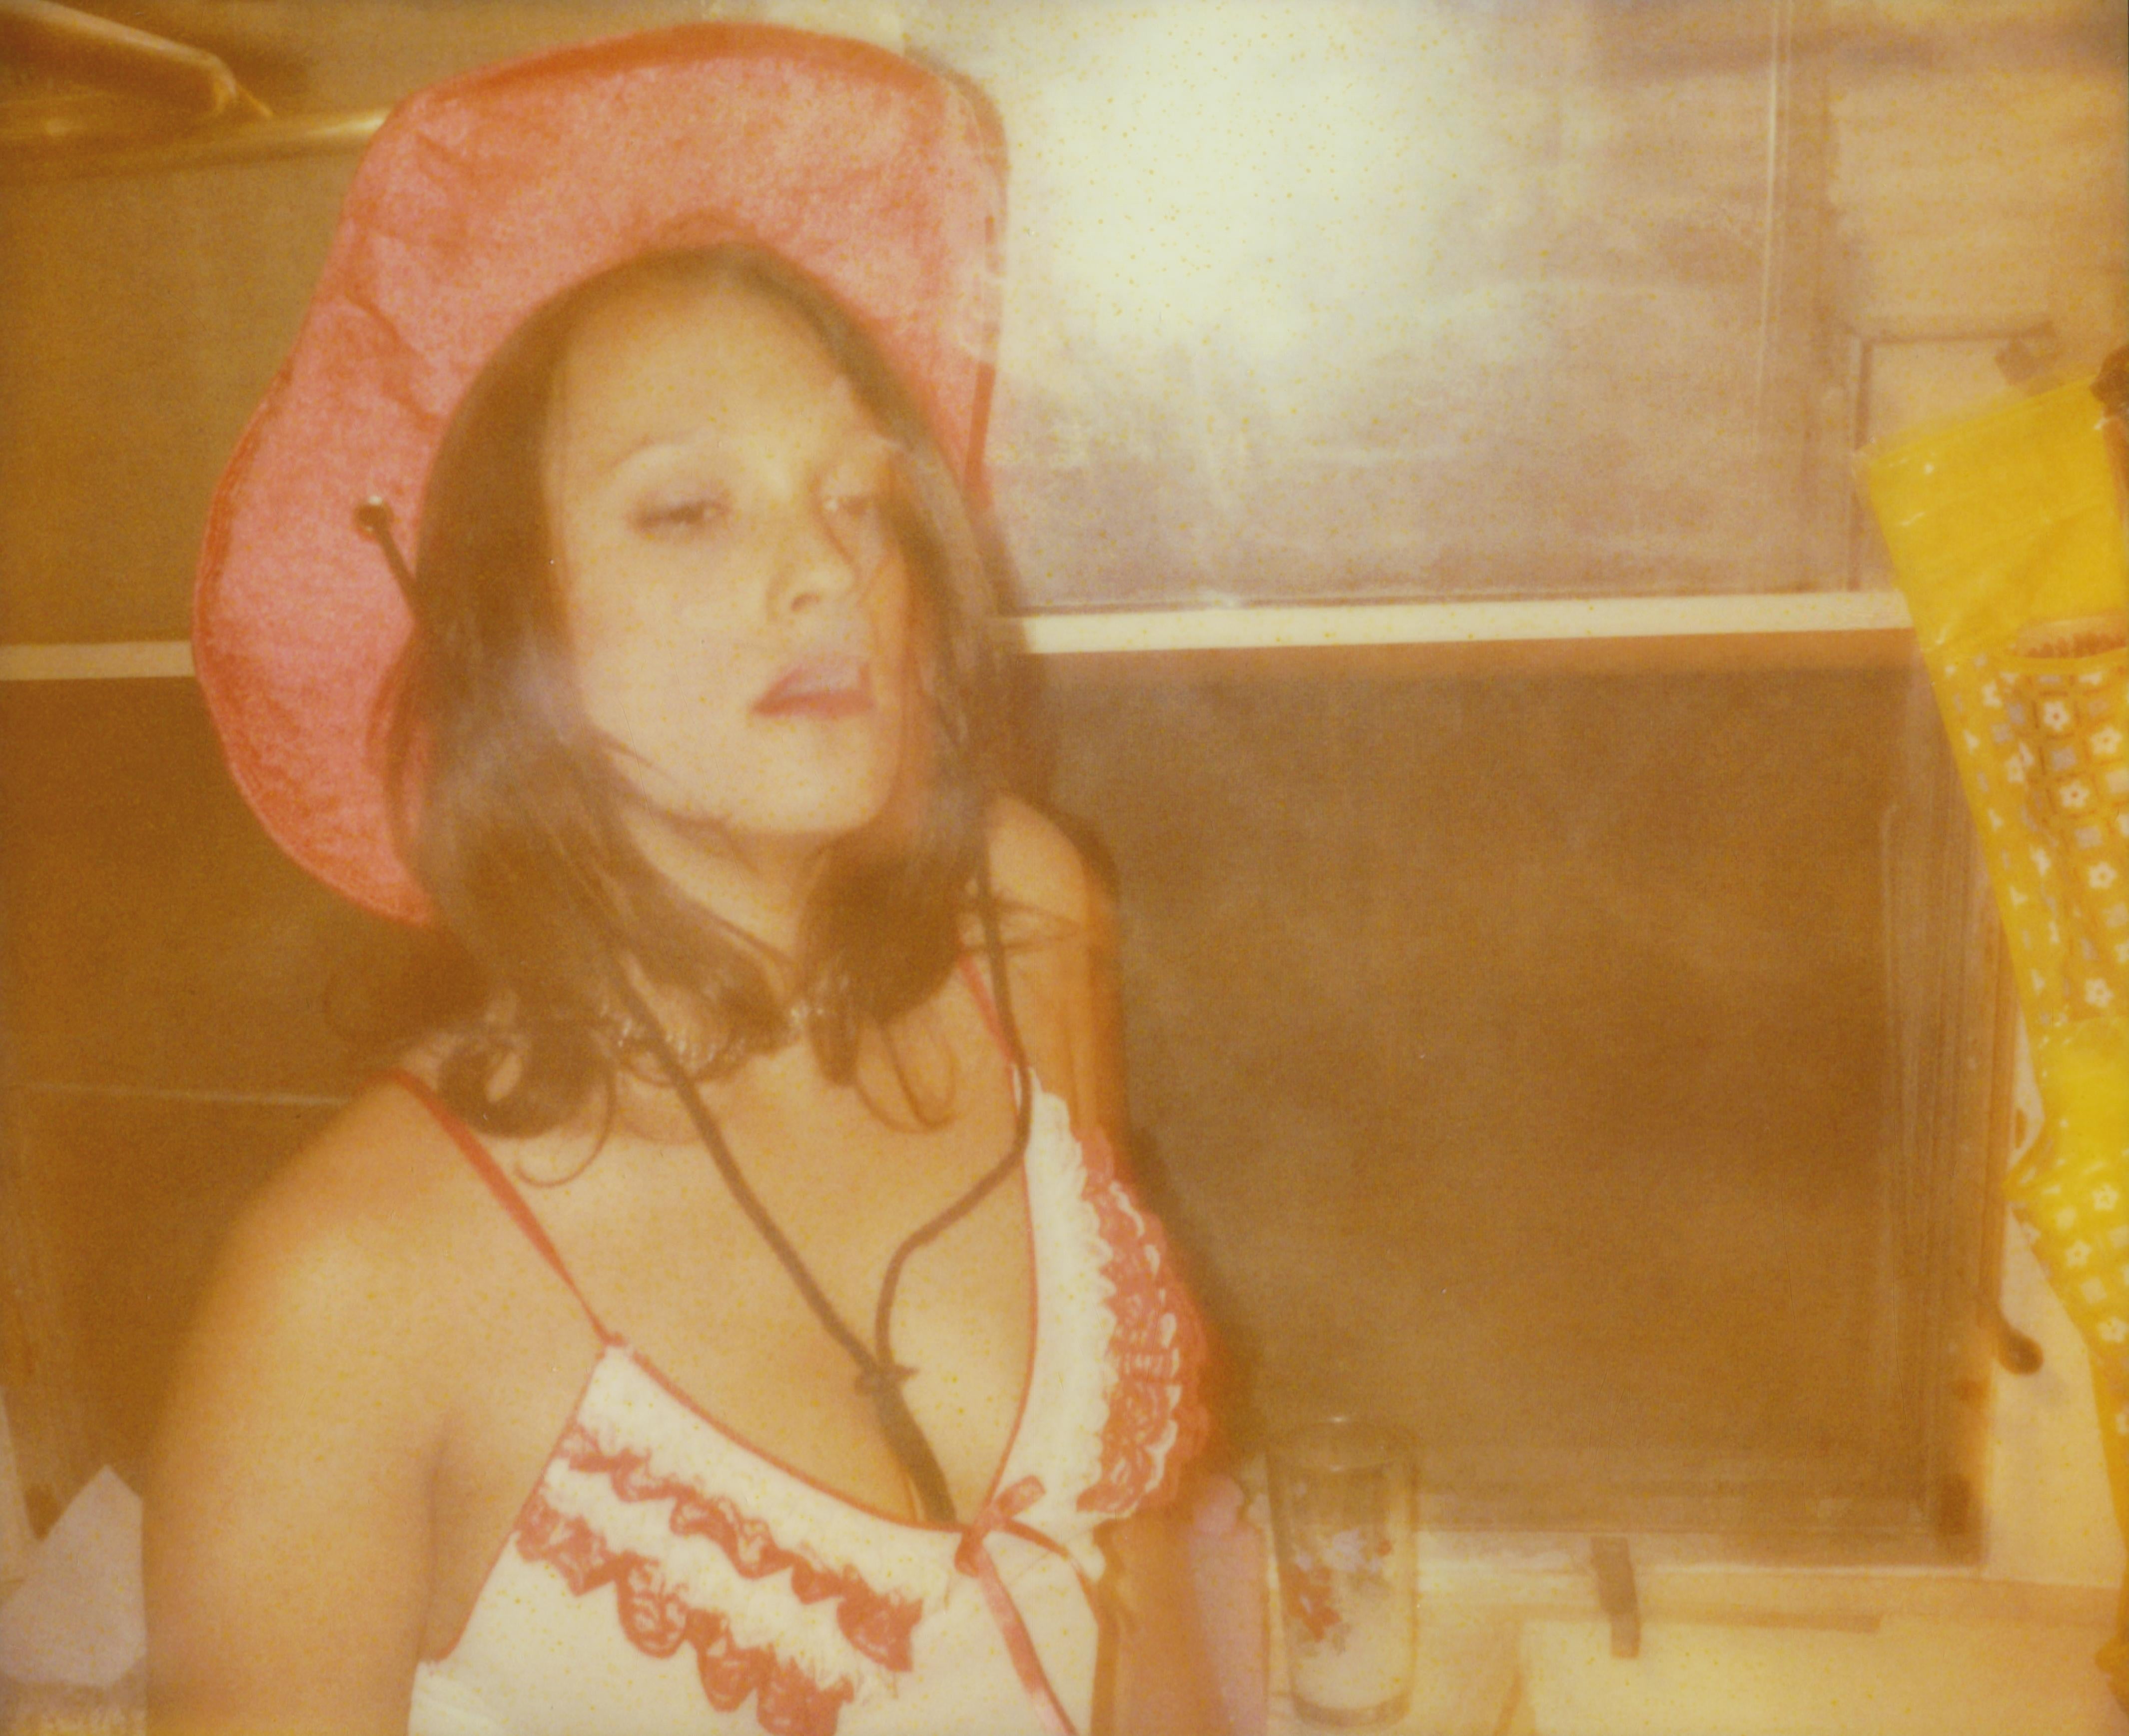 'Margarita smokes in Bathroom'  (Till Death do us Part) - Polaroid, Contemporary